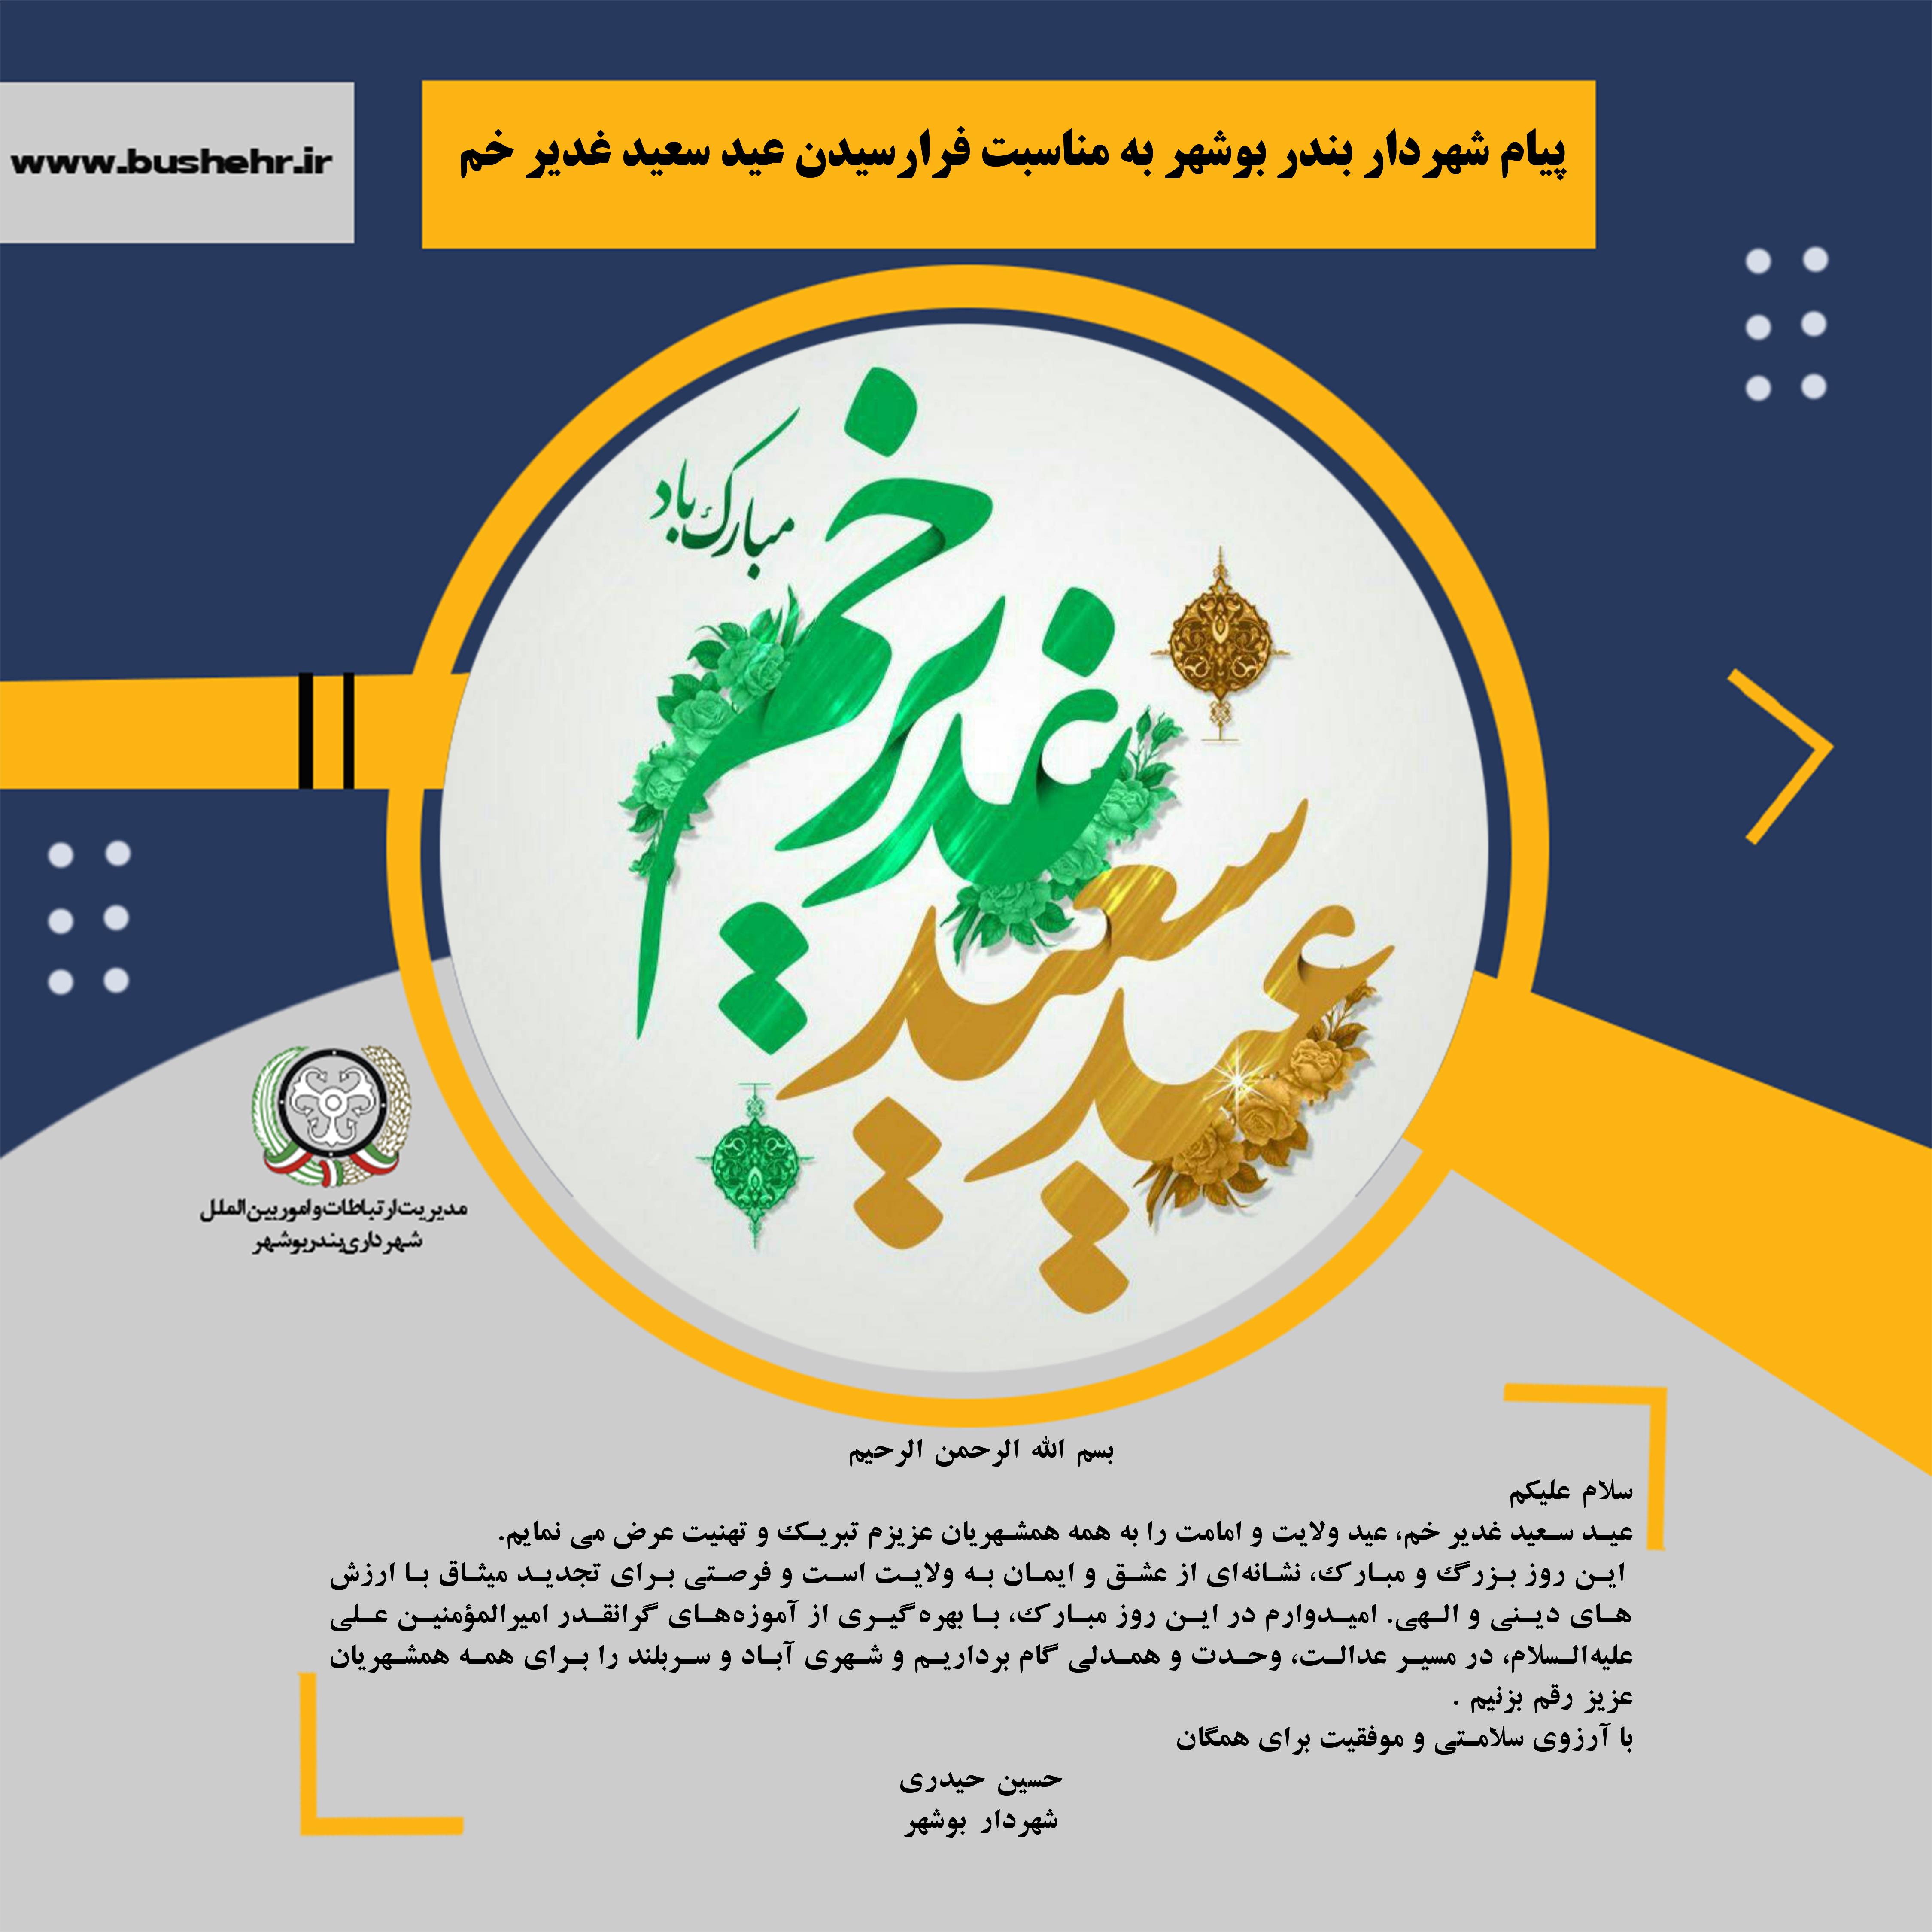 پیام شهردار بندر بوشهر به مناسبت فرارسیدن عید سعید غدیر خم